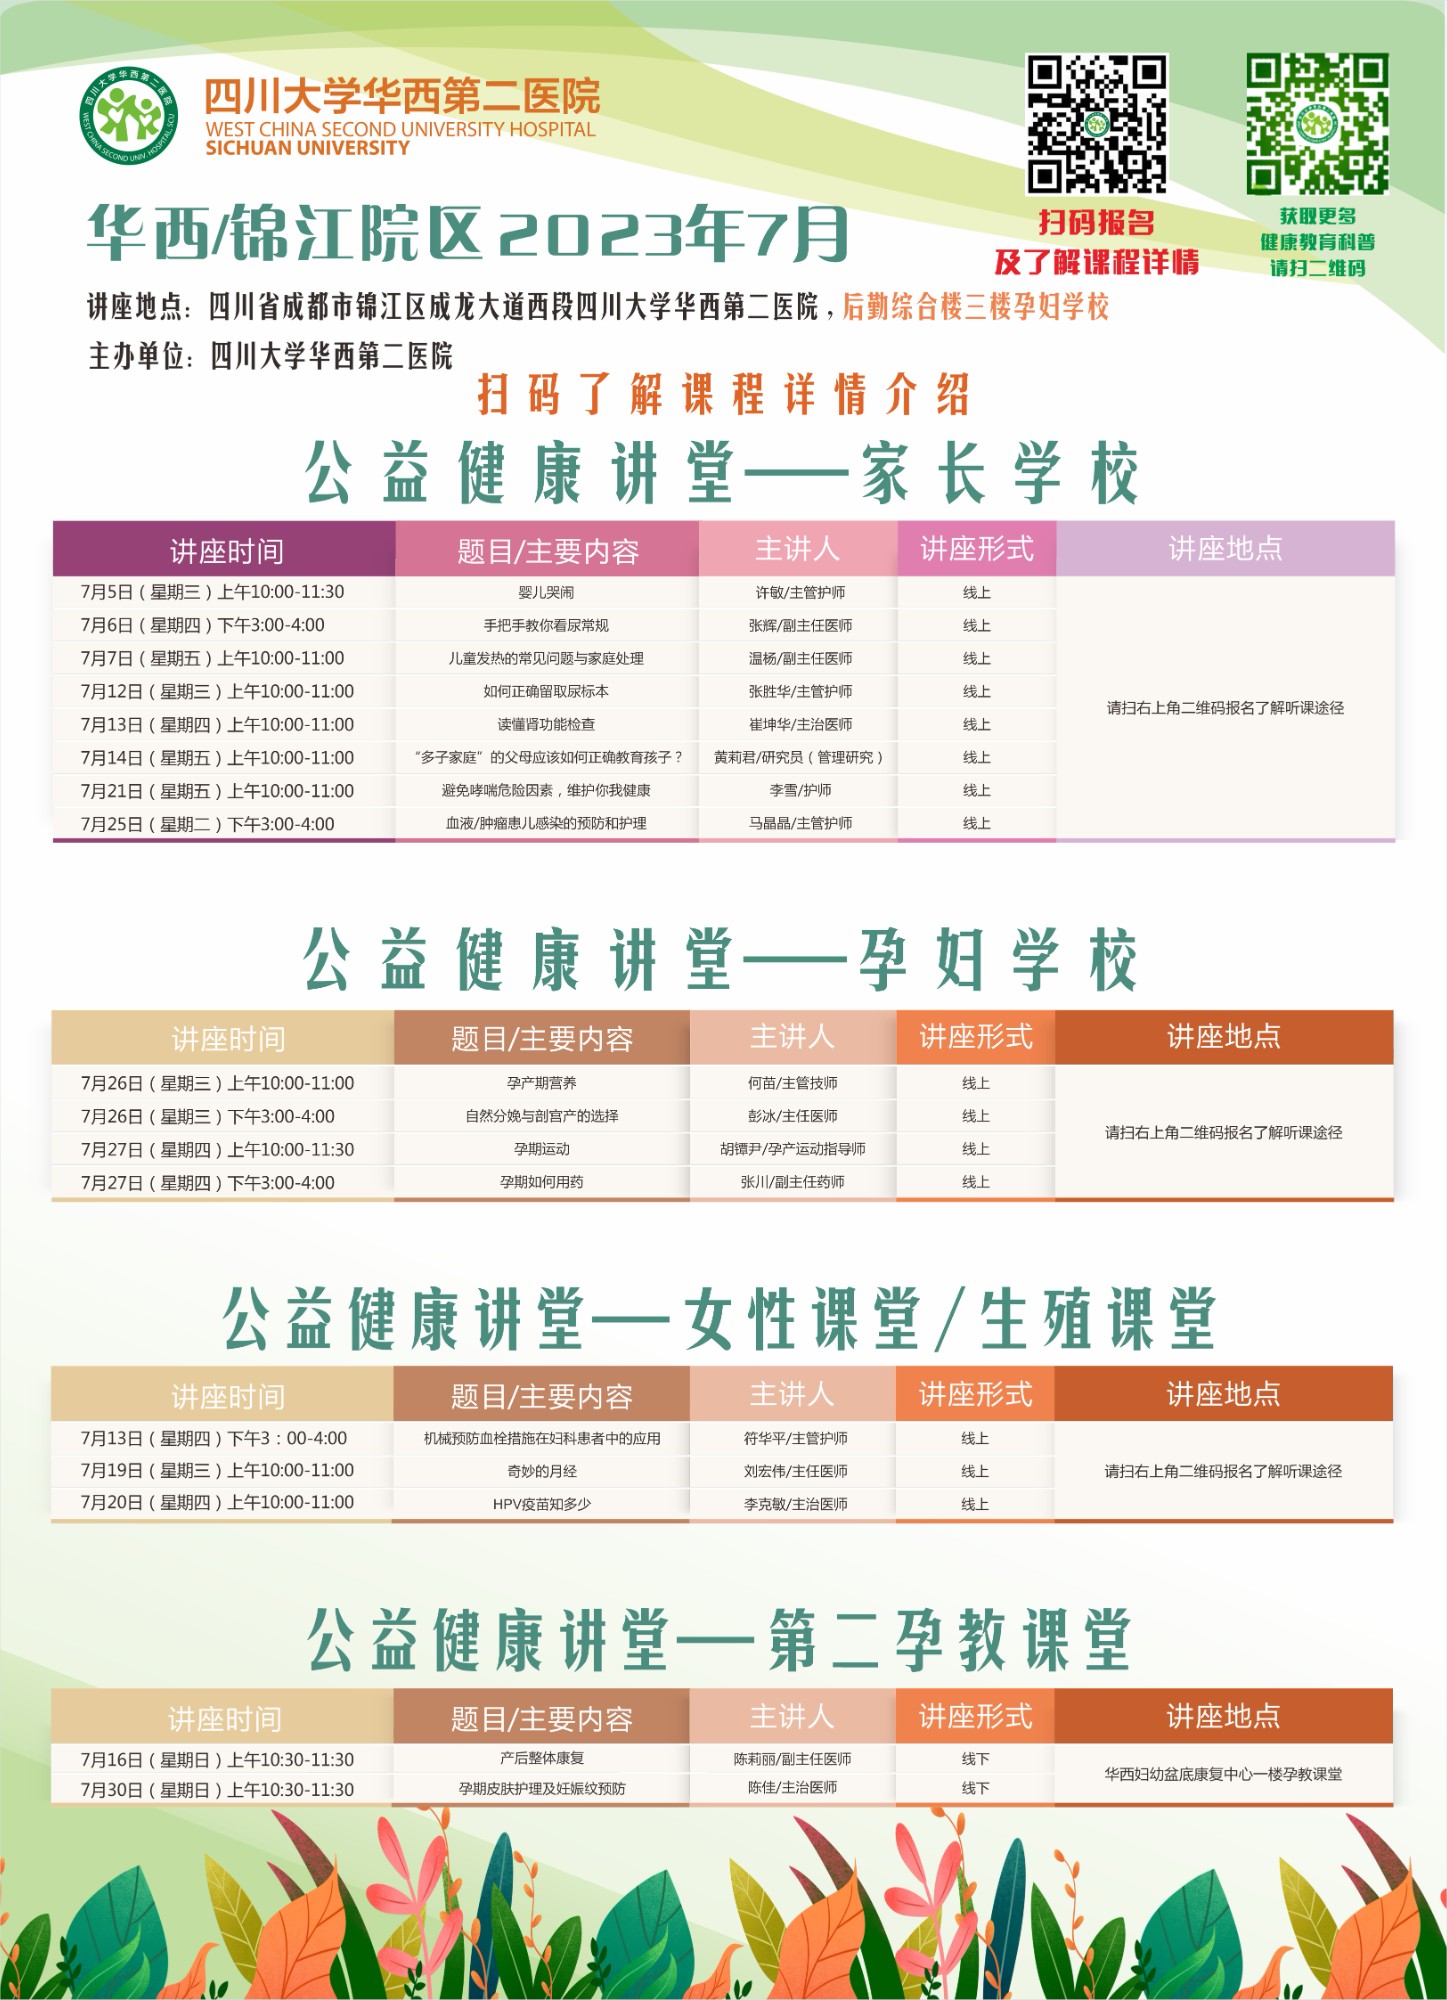 四川大学华西第二医院2023年7月公益家长学校/孕妇学校课程表